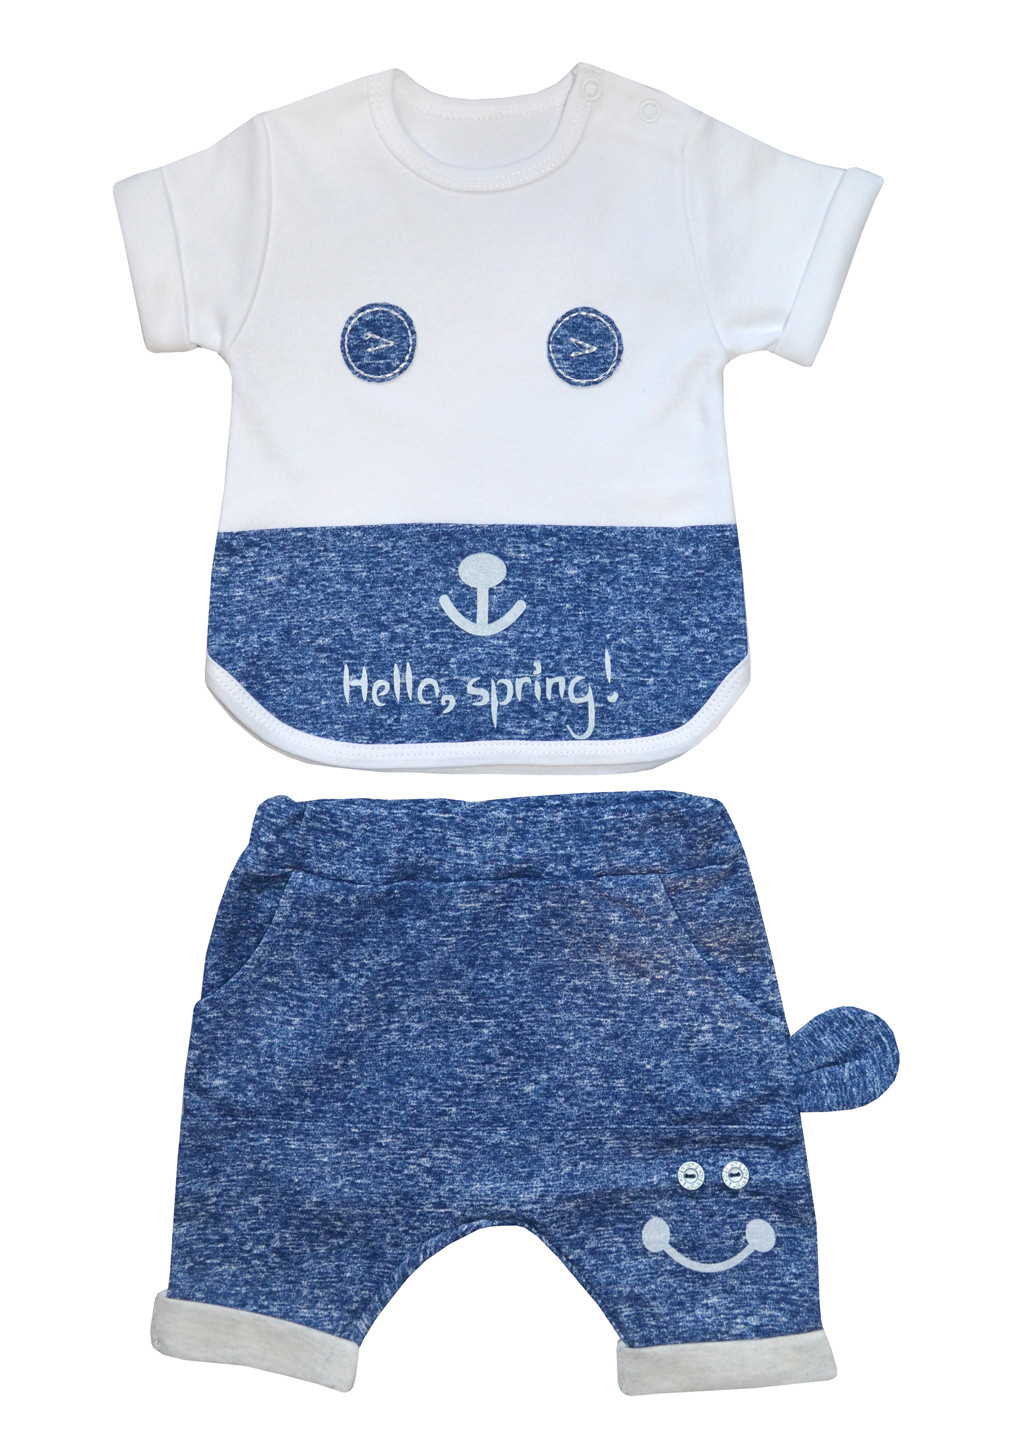 Синий летний костюм (футболка, шорты) с коротким рукавом BabiesBerries